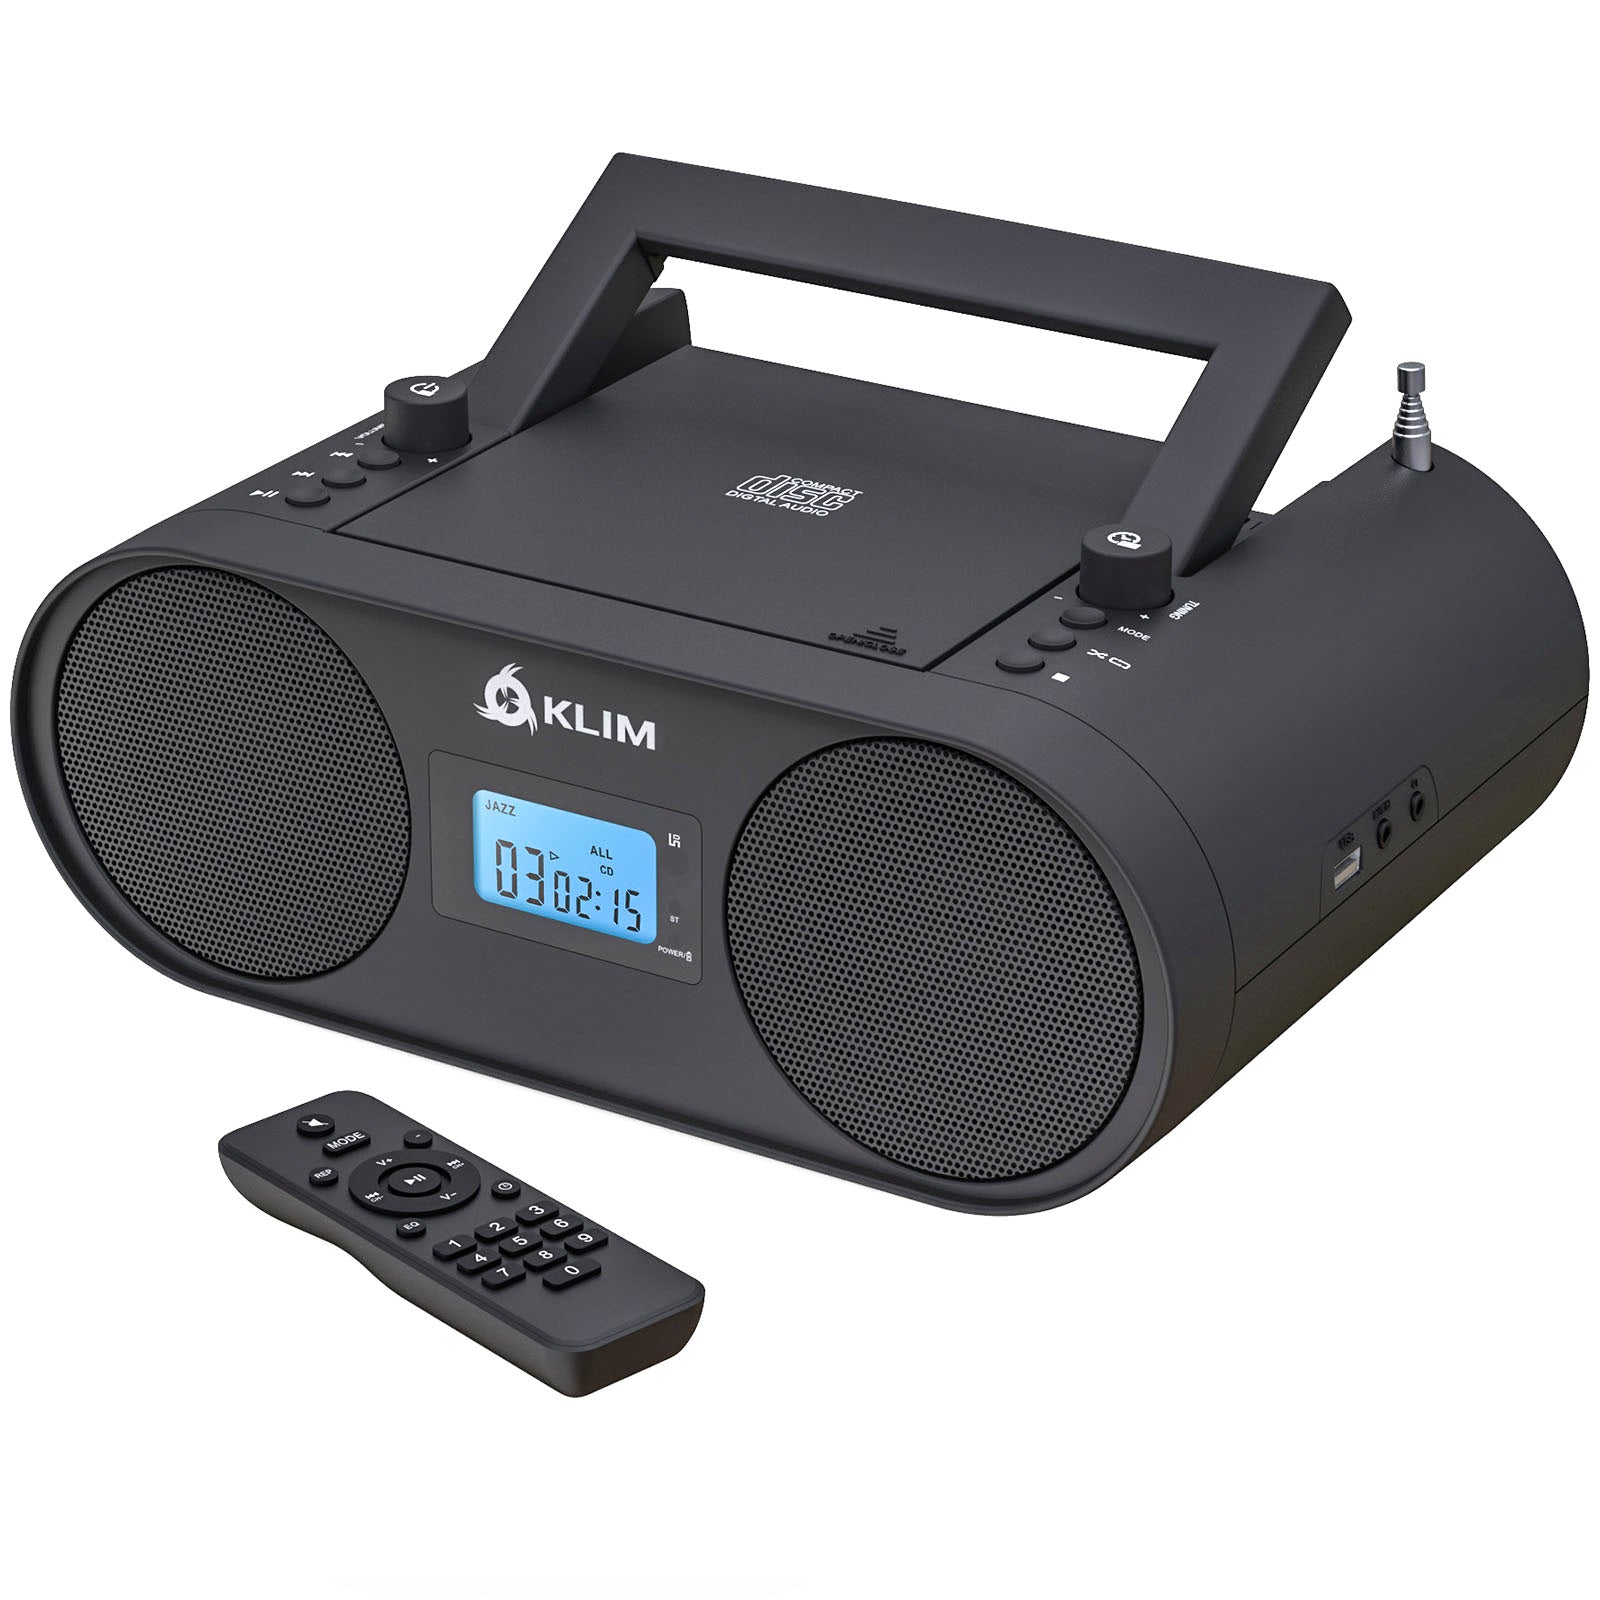  Portable Radios - Portable Radios / Portable Audio